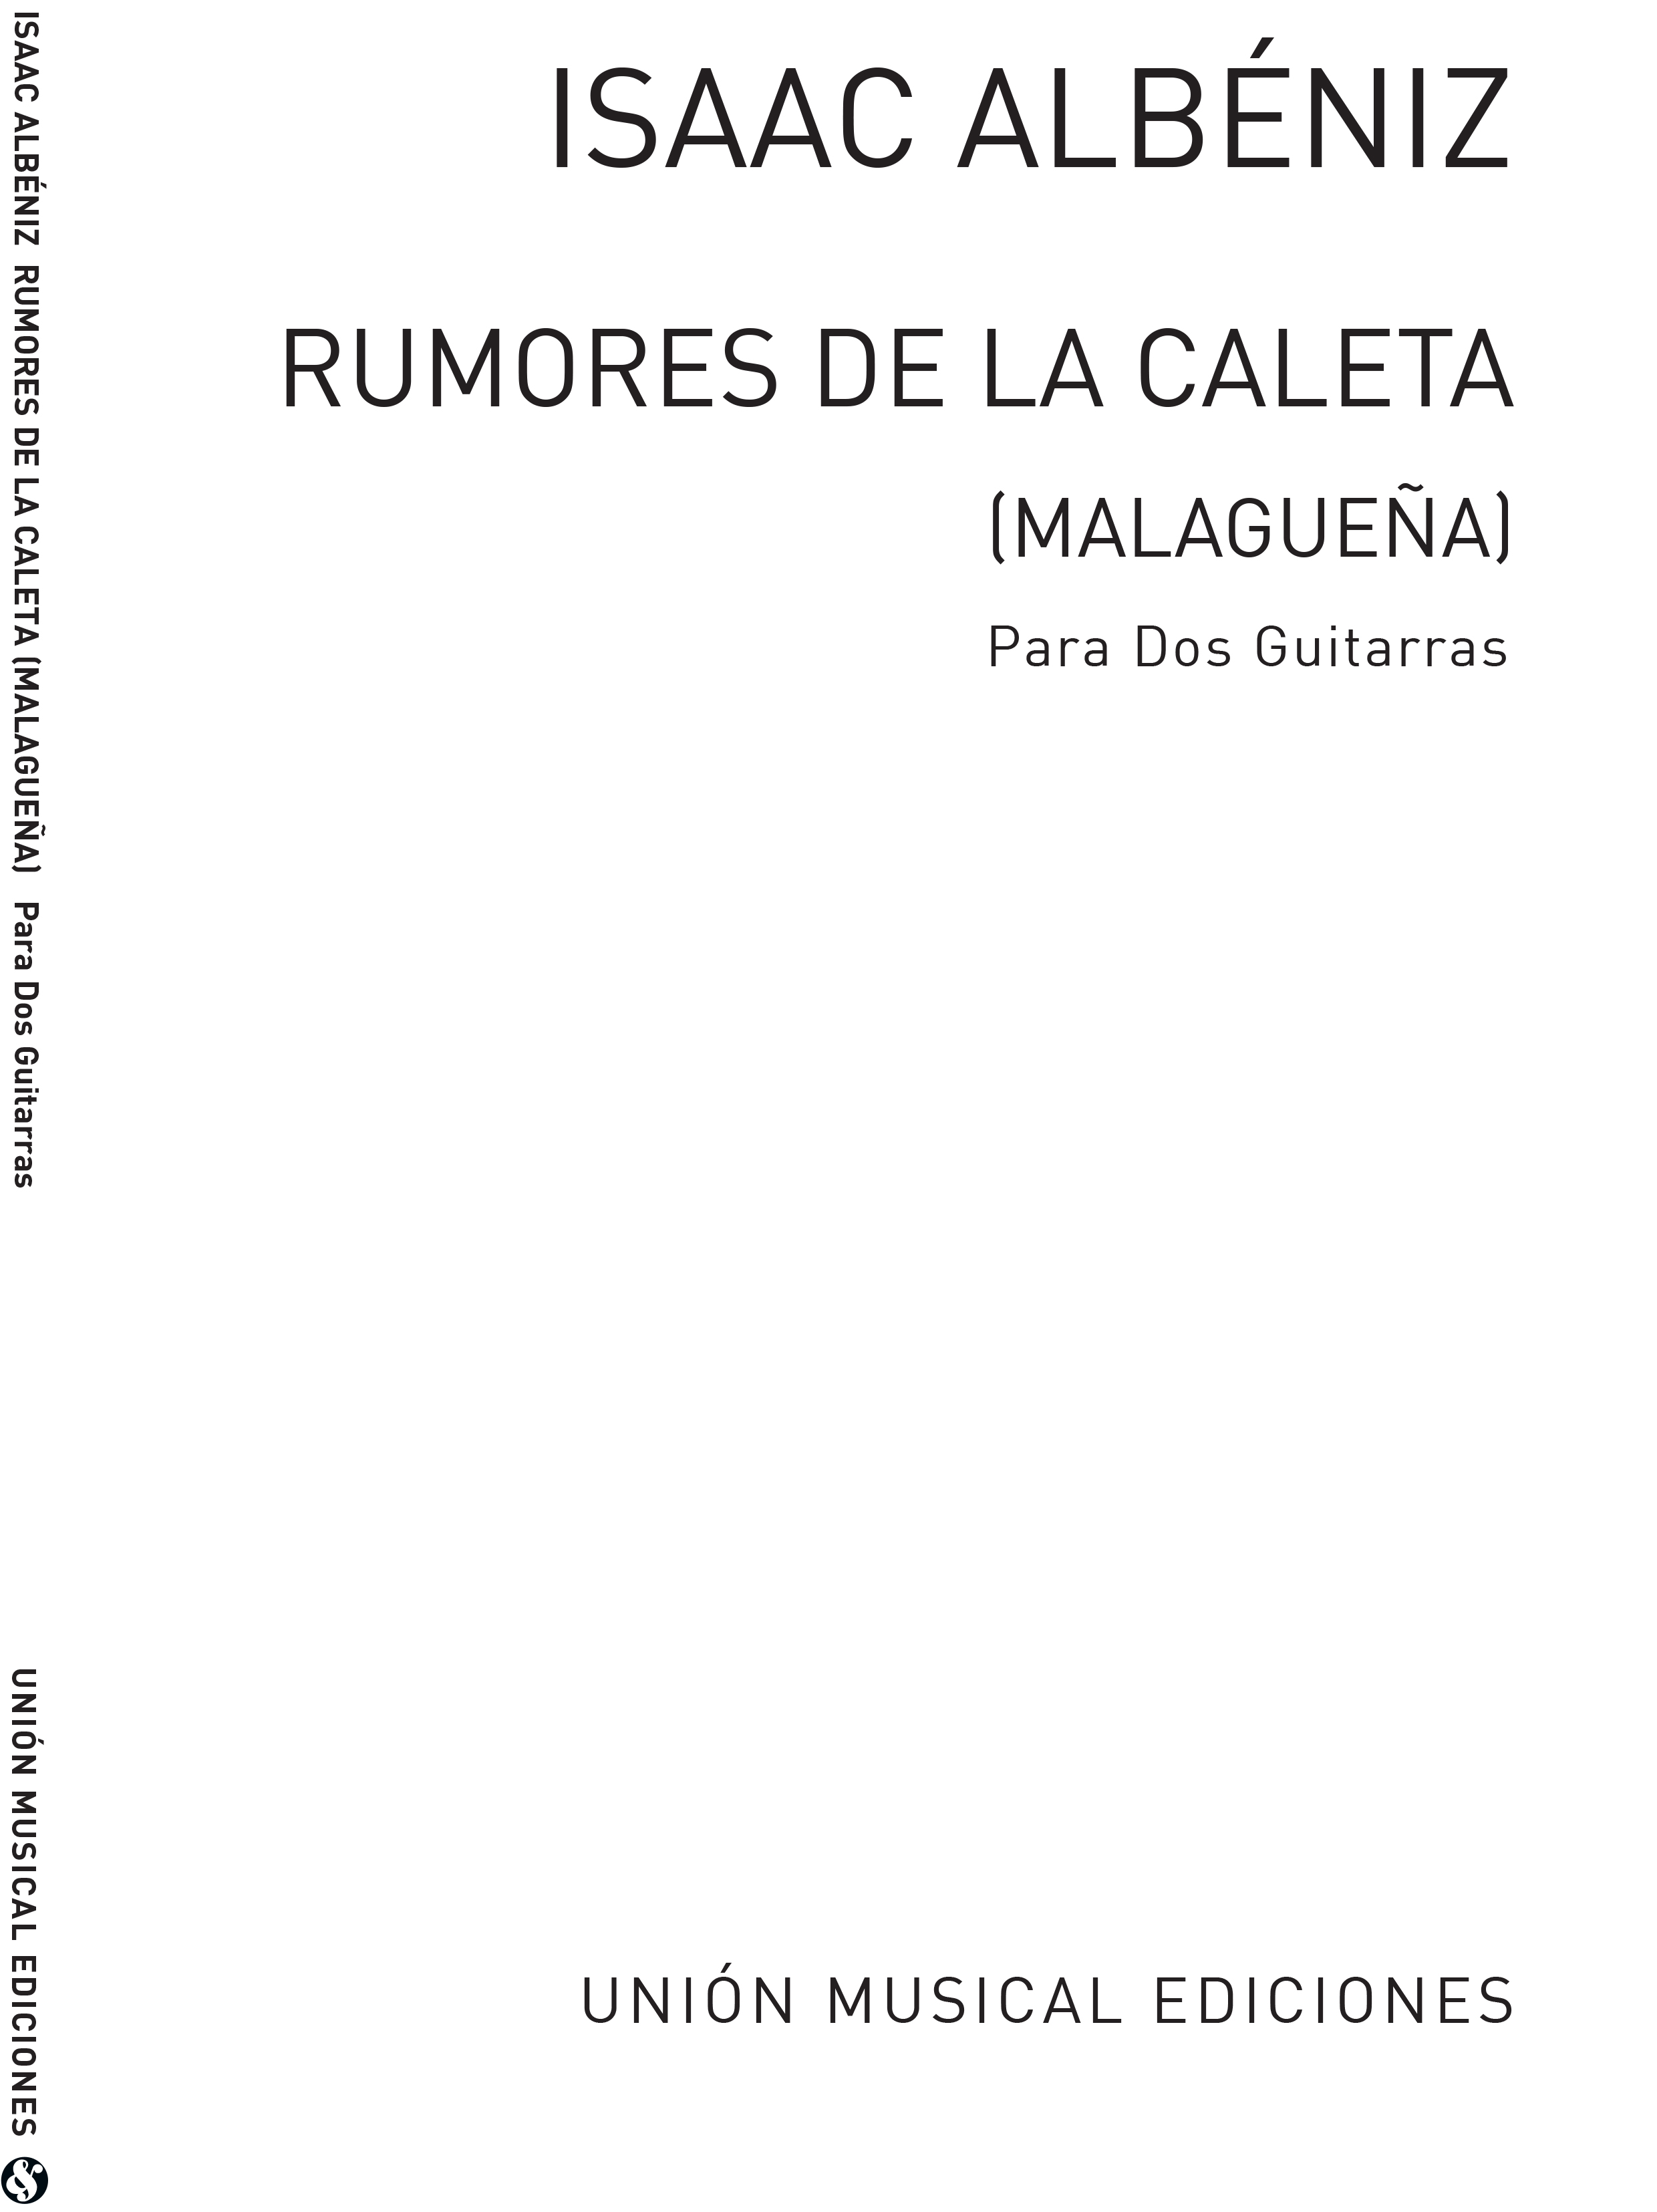 Isaac Albniz: Albeniz Rumores De La Caleta Malaguena 2 Guitars: Guitar: